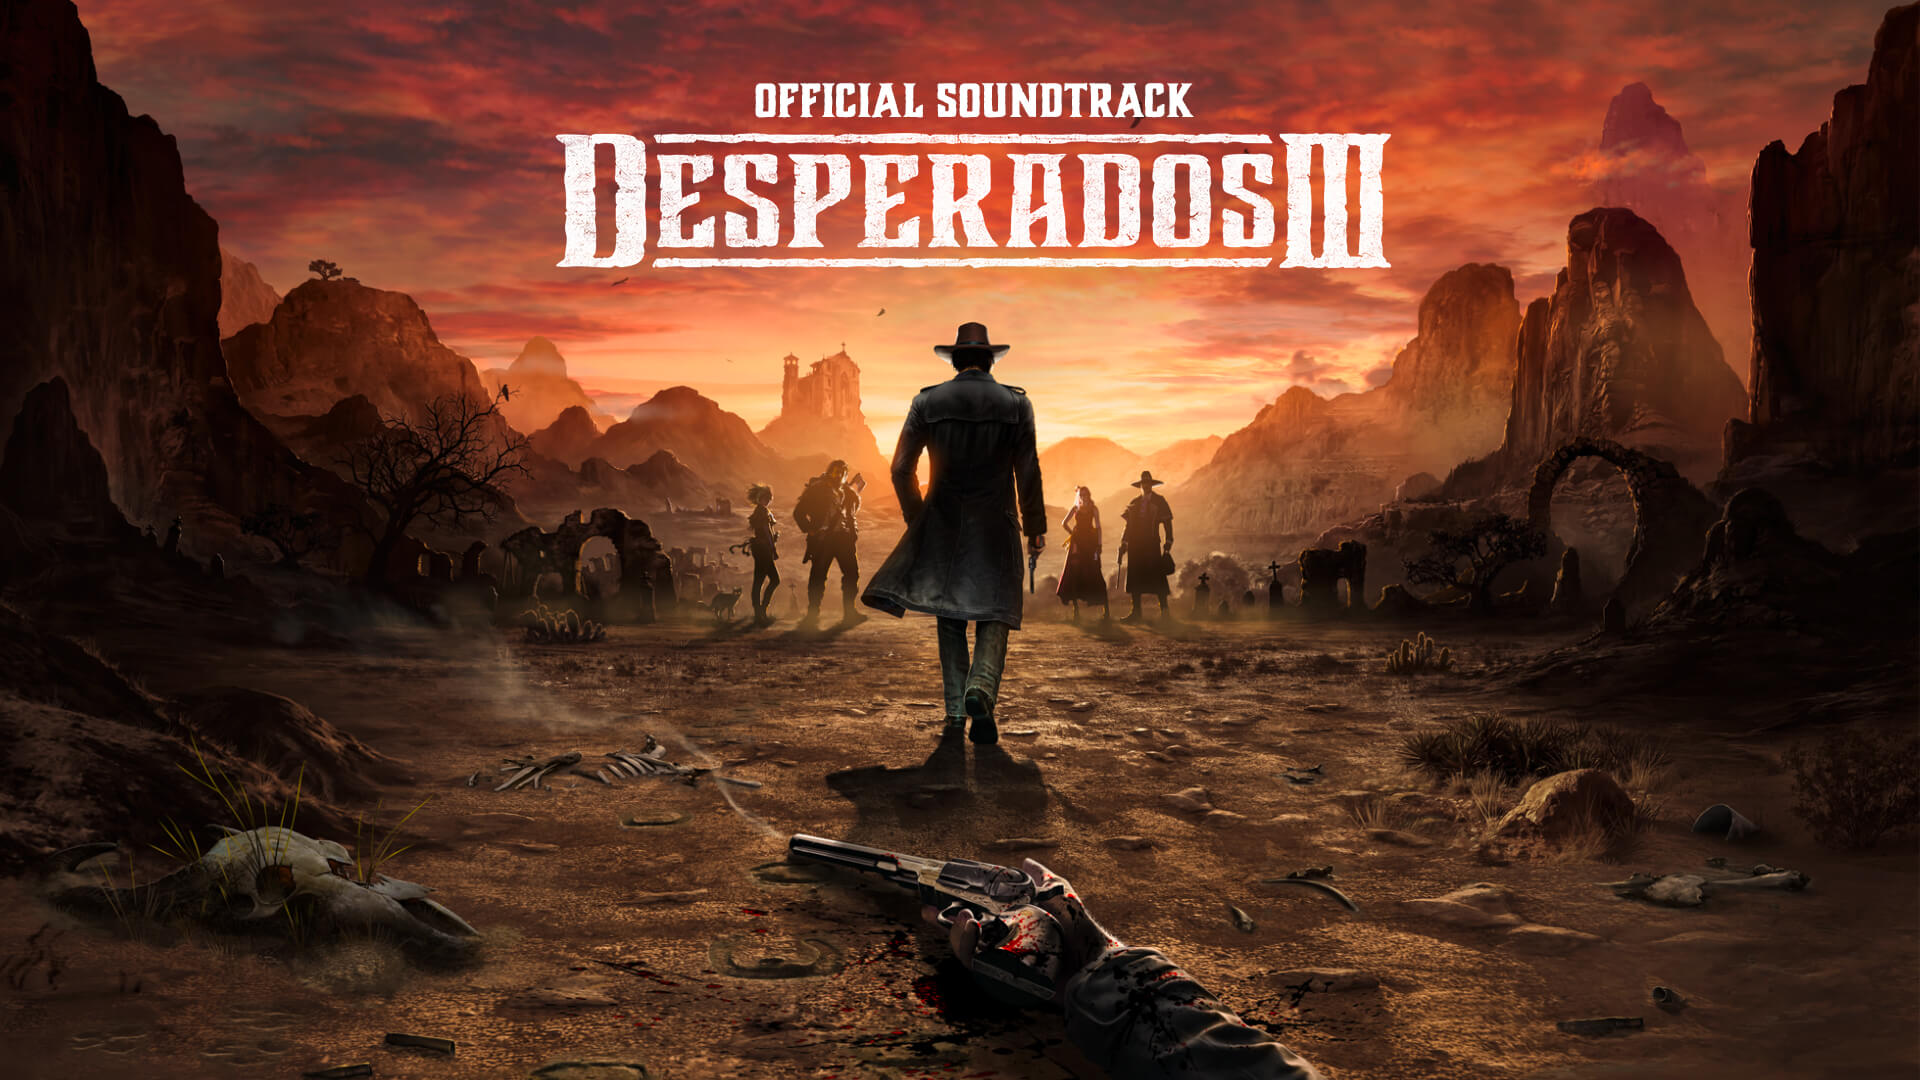 Desperados III - Soundtrack DLC Steam CD Key 4.51 $